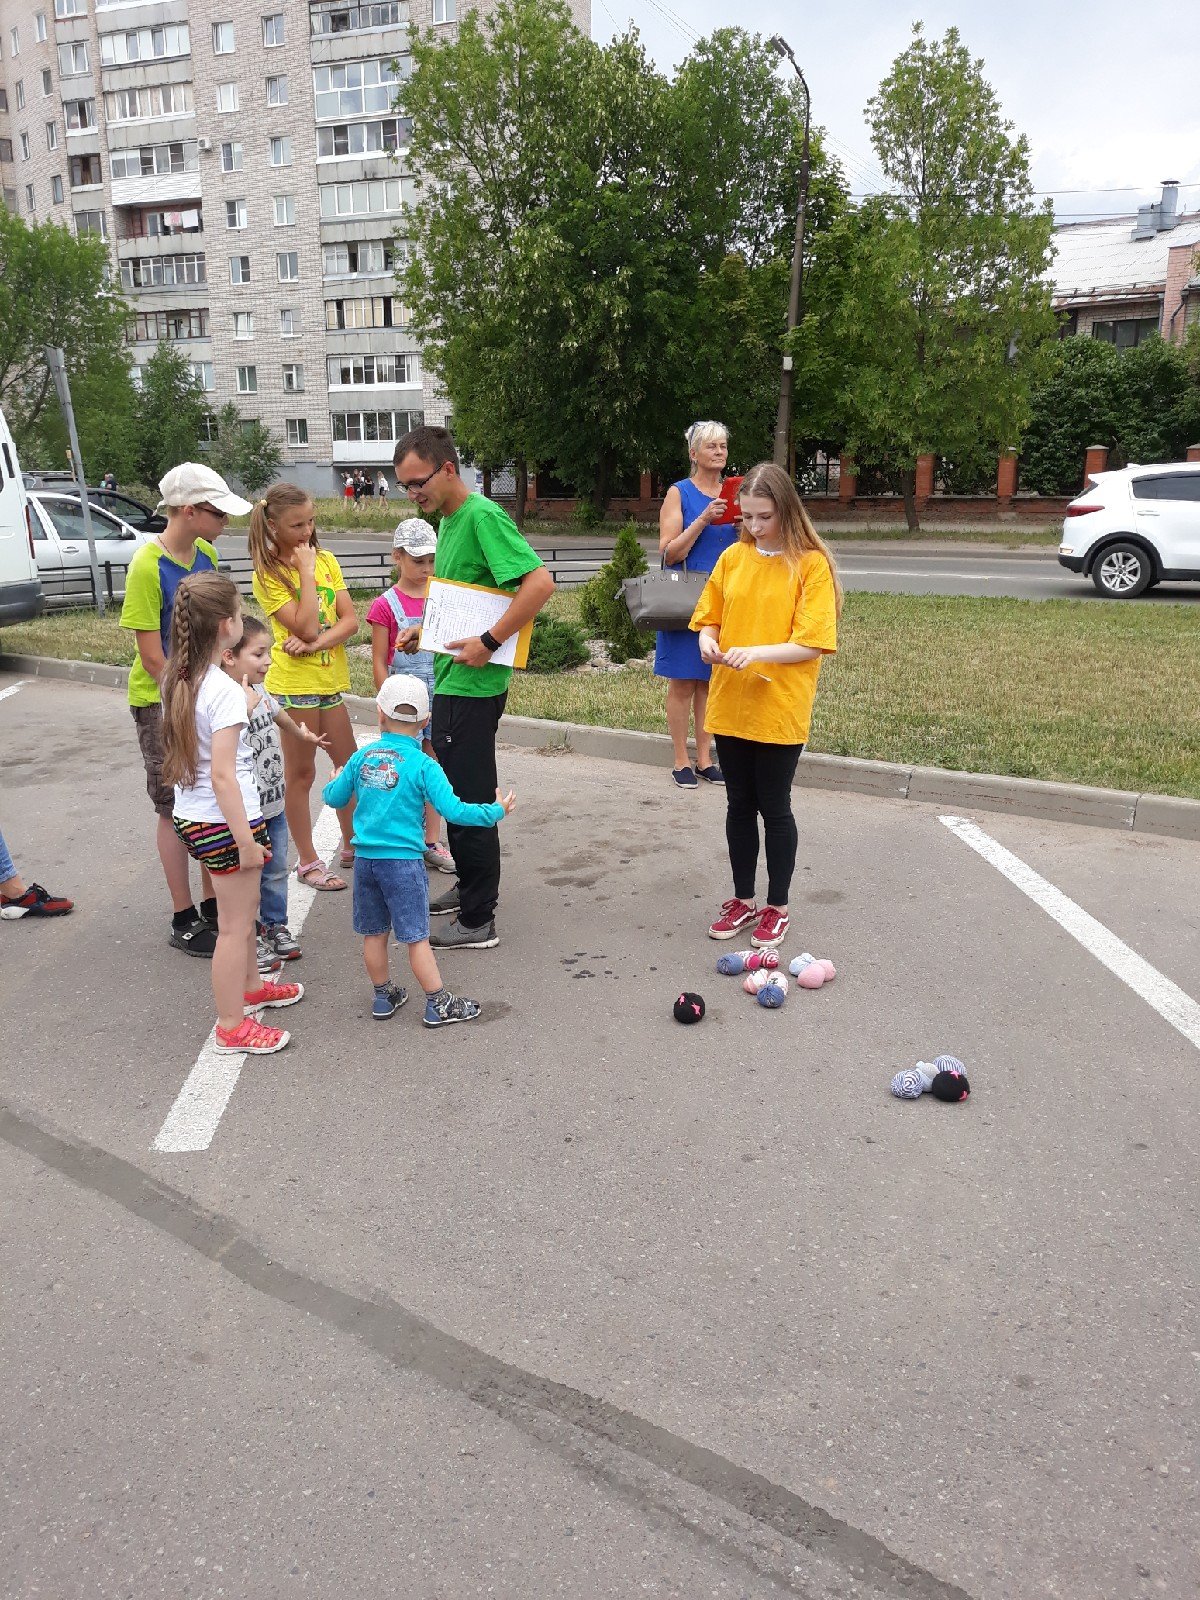 Традиционно, волонтеры Объединения "3Д" ВГСХА проводят игры для детей, около торгового центра "Апельсин". Спасибо каждому волонтеру, который принимает в этом участие. Дети учатся играть в русские народные игры и больше взаимодействовать друг с другом